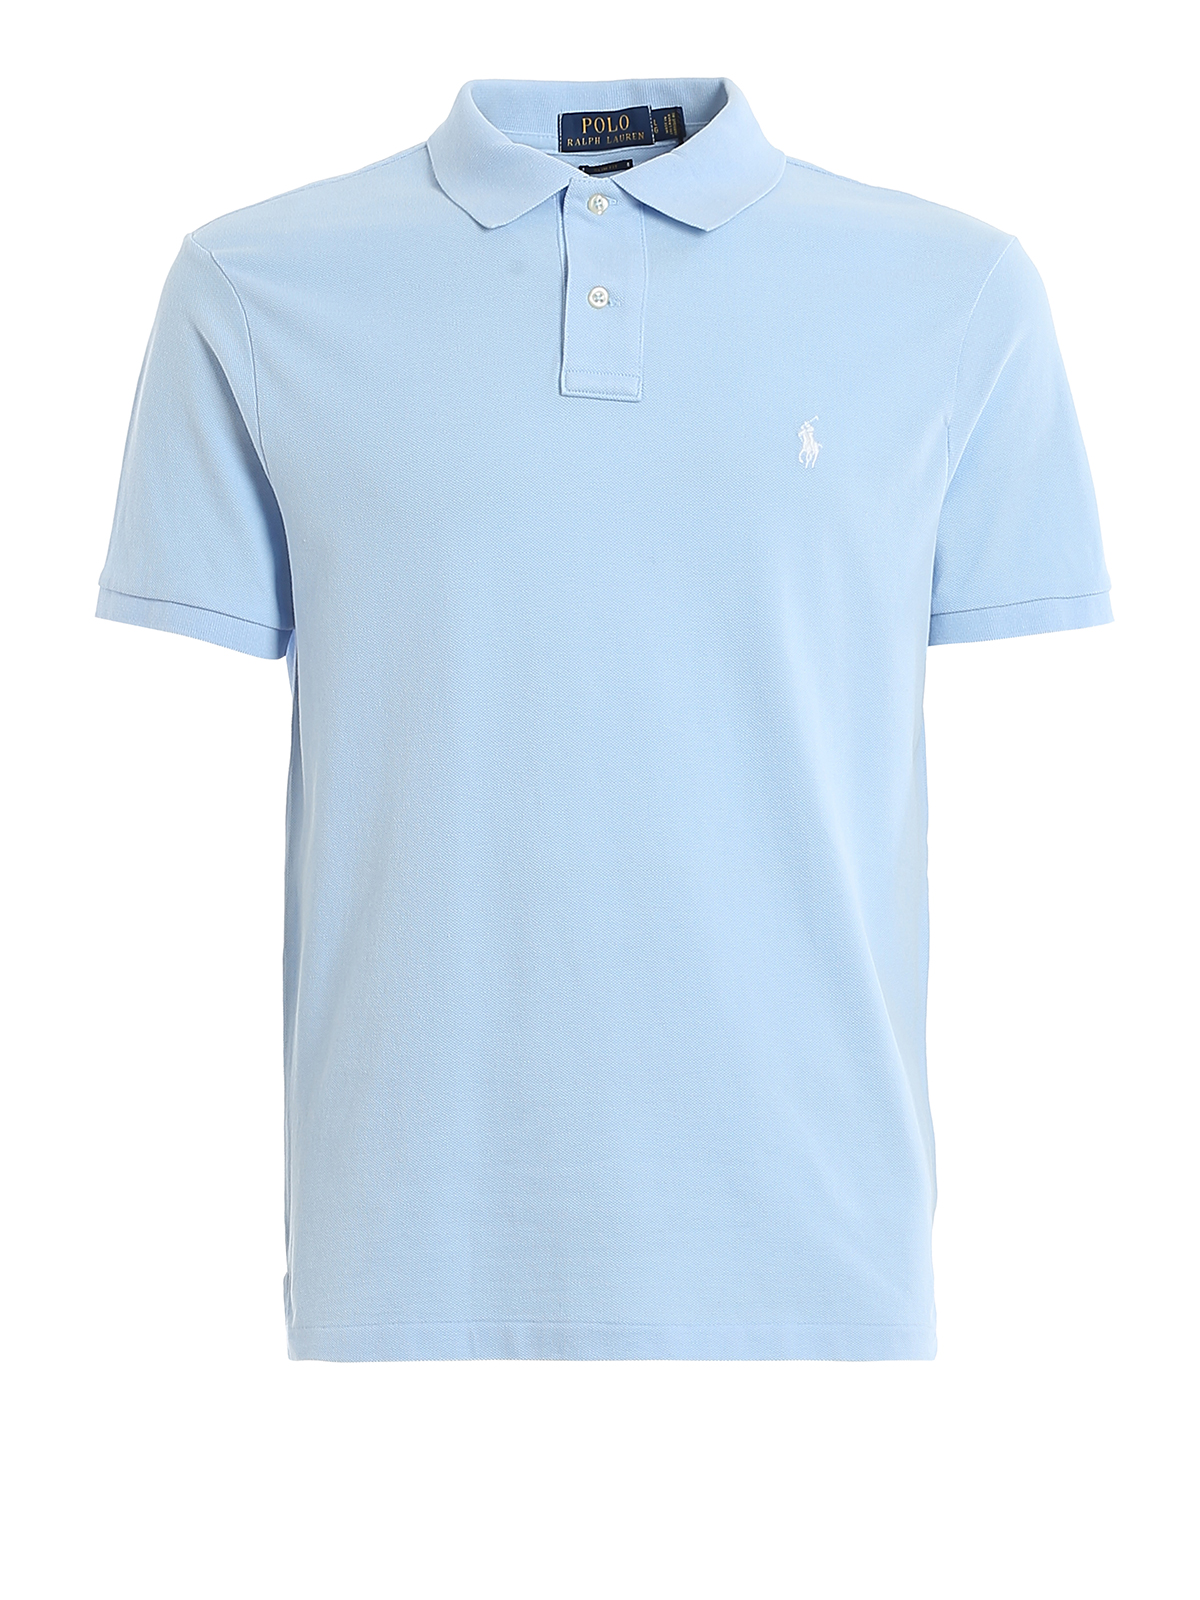 Polo shirts Polo Ralph Lauren blue cotton - pique 710795080016 polo Light - fit slim